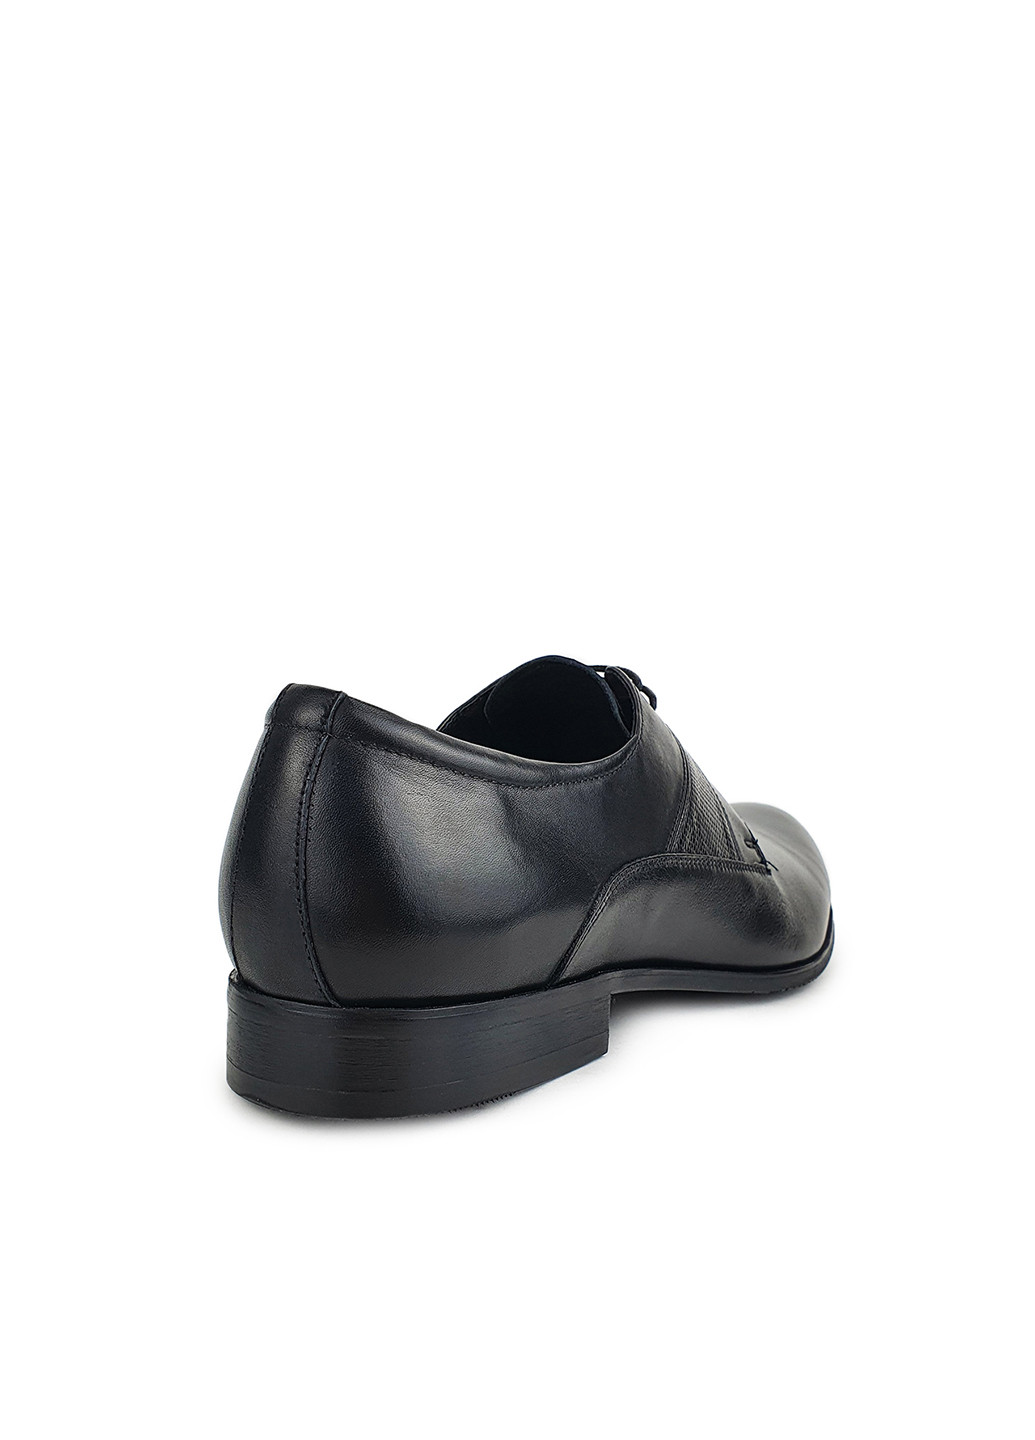 Черные повседневные туфли мужские классические весна осень натуральная кожа черные,, ba05a28-j, 39 Basconi